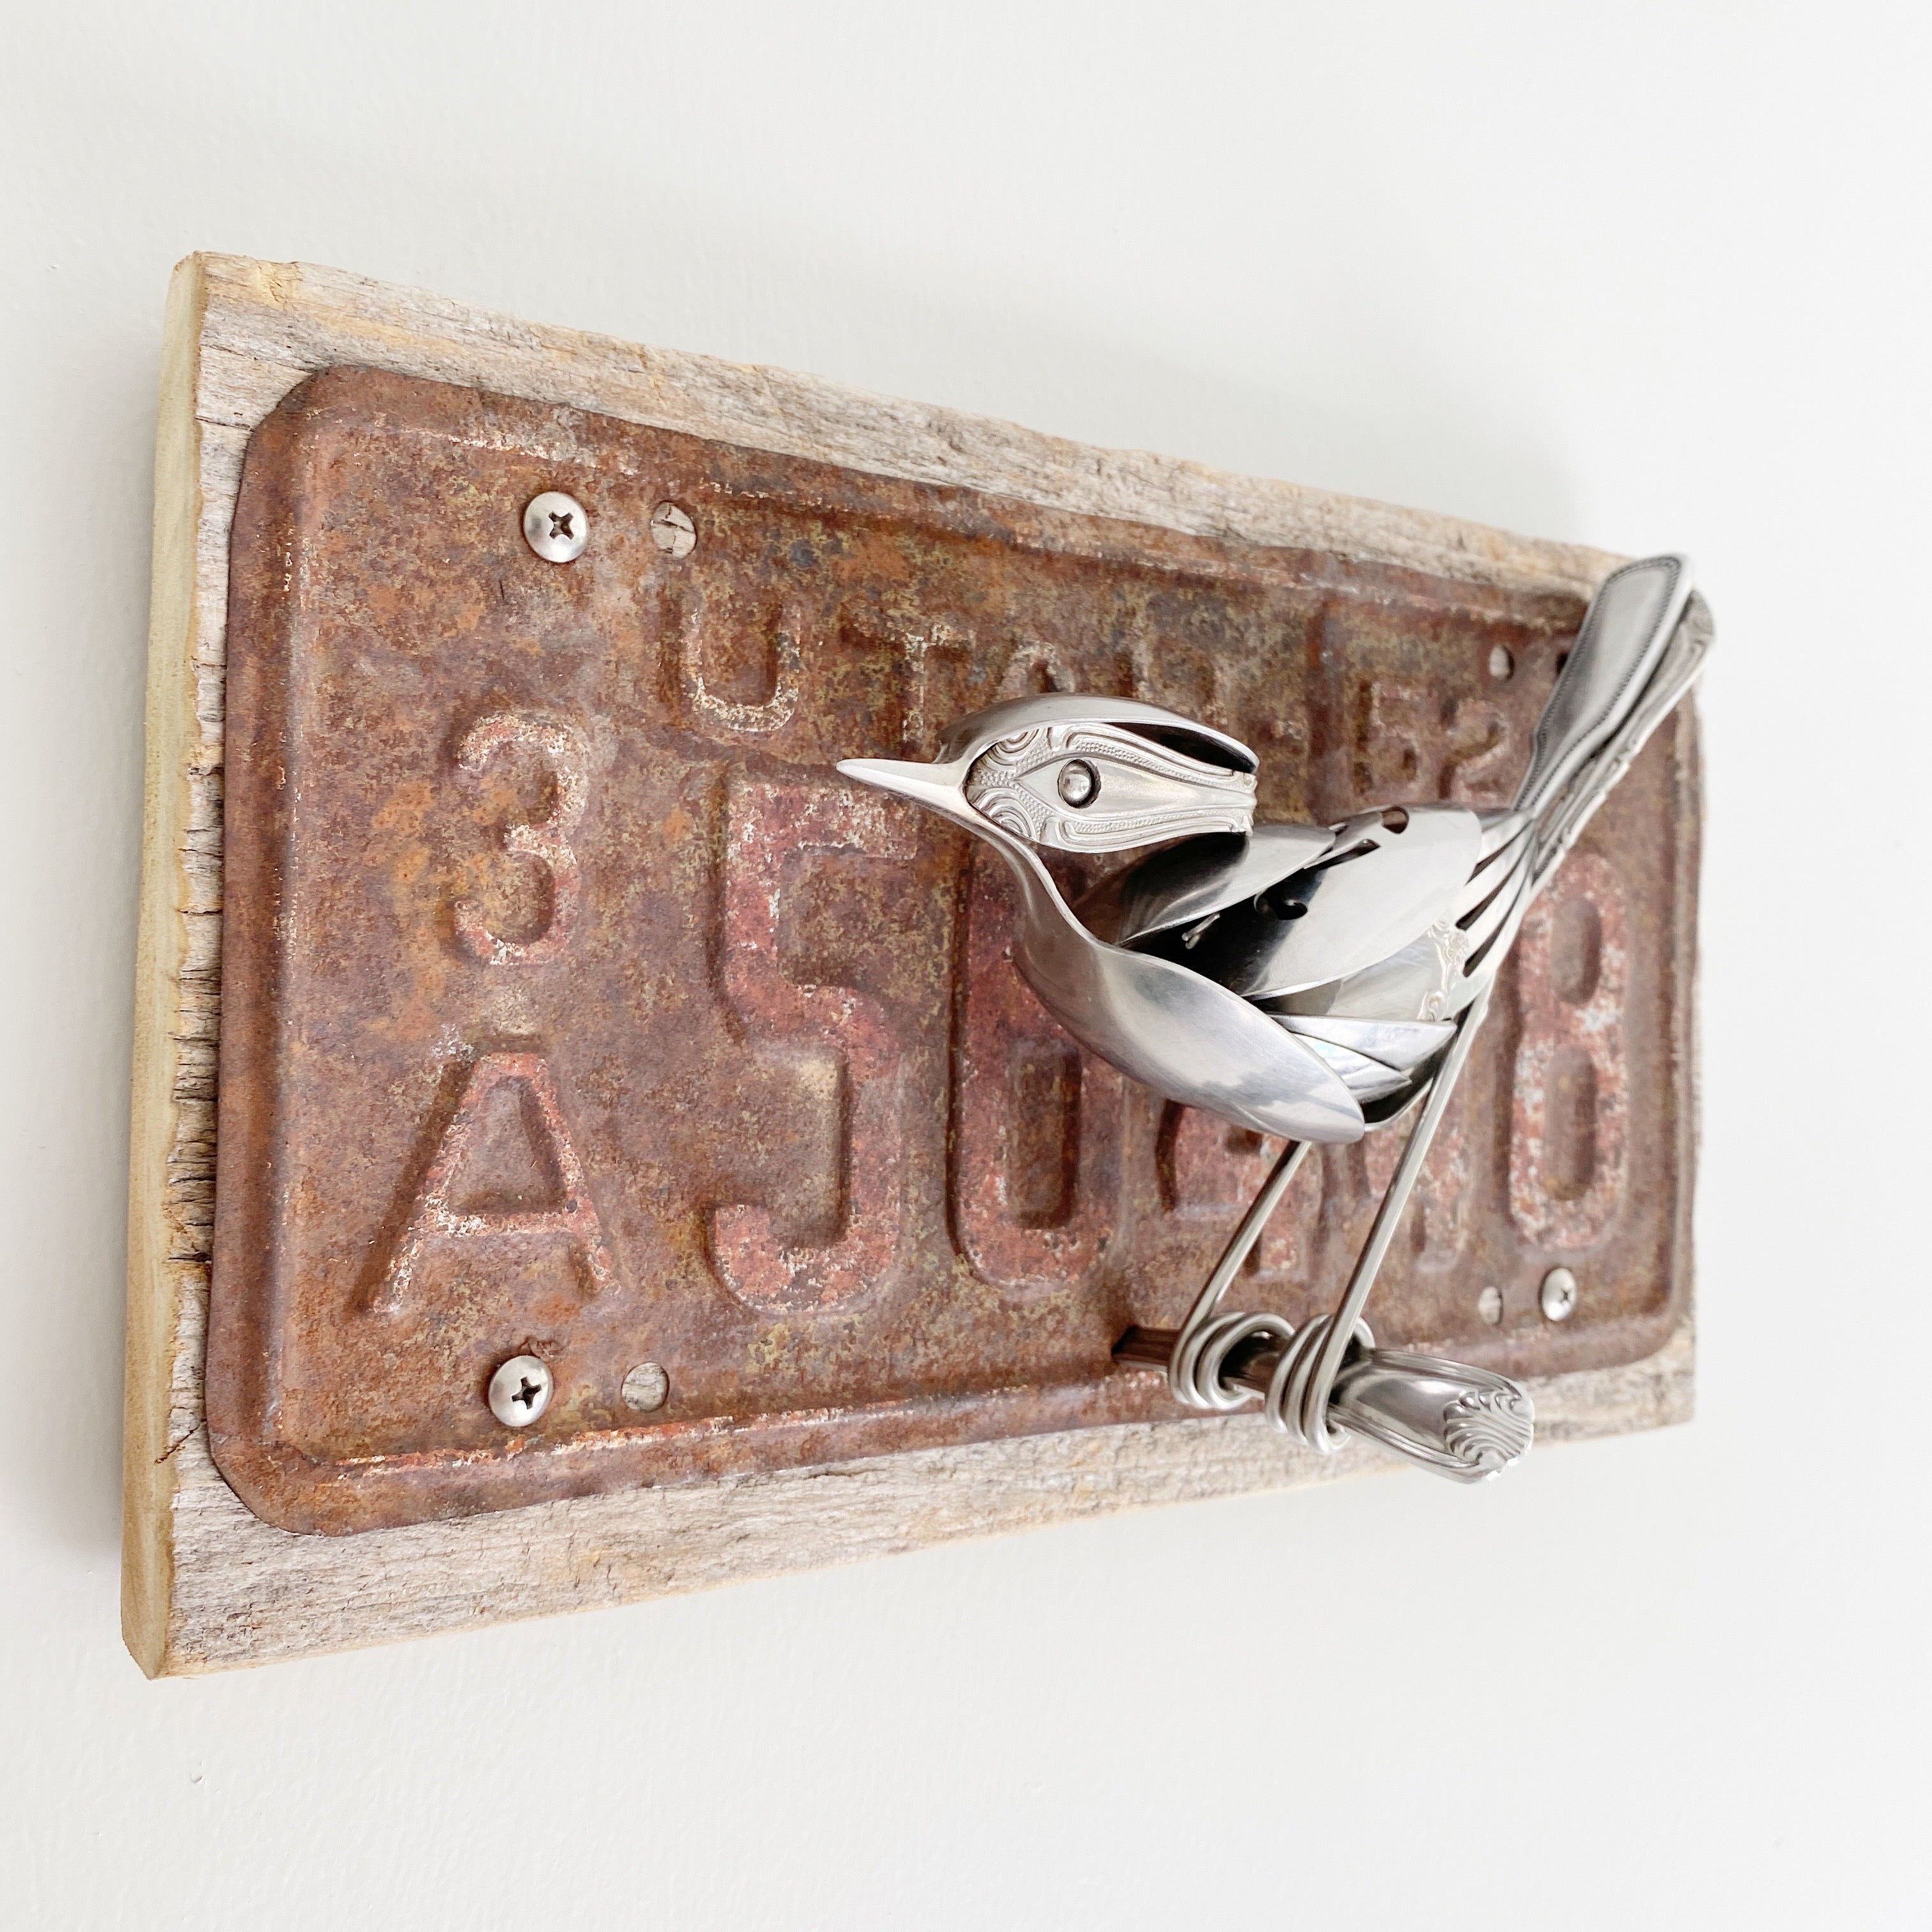 "Hudson" - Upcycled Metal Bird Sculpture